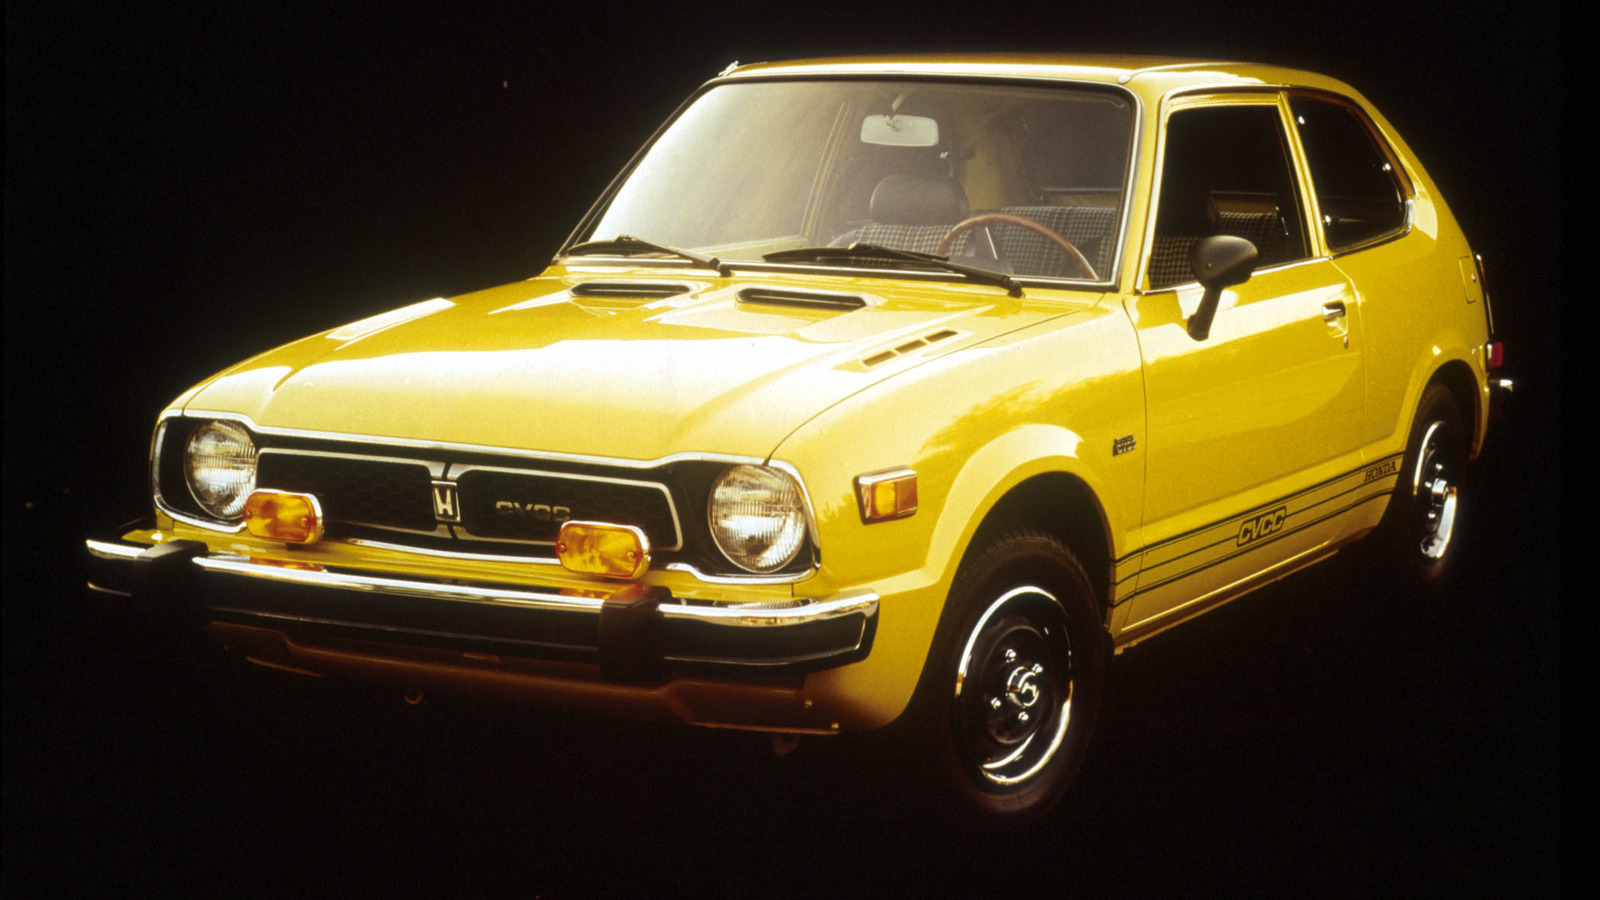 Het unieke karakter van Honda’s CVCC-motortechnologie uit 1972 in context